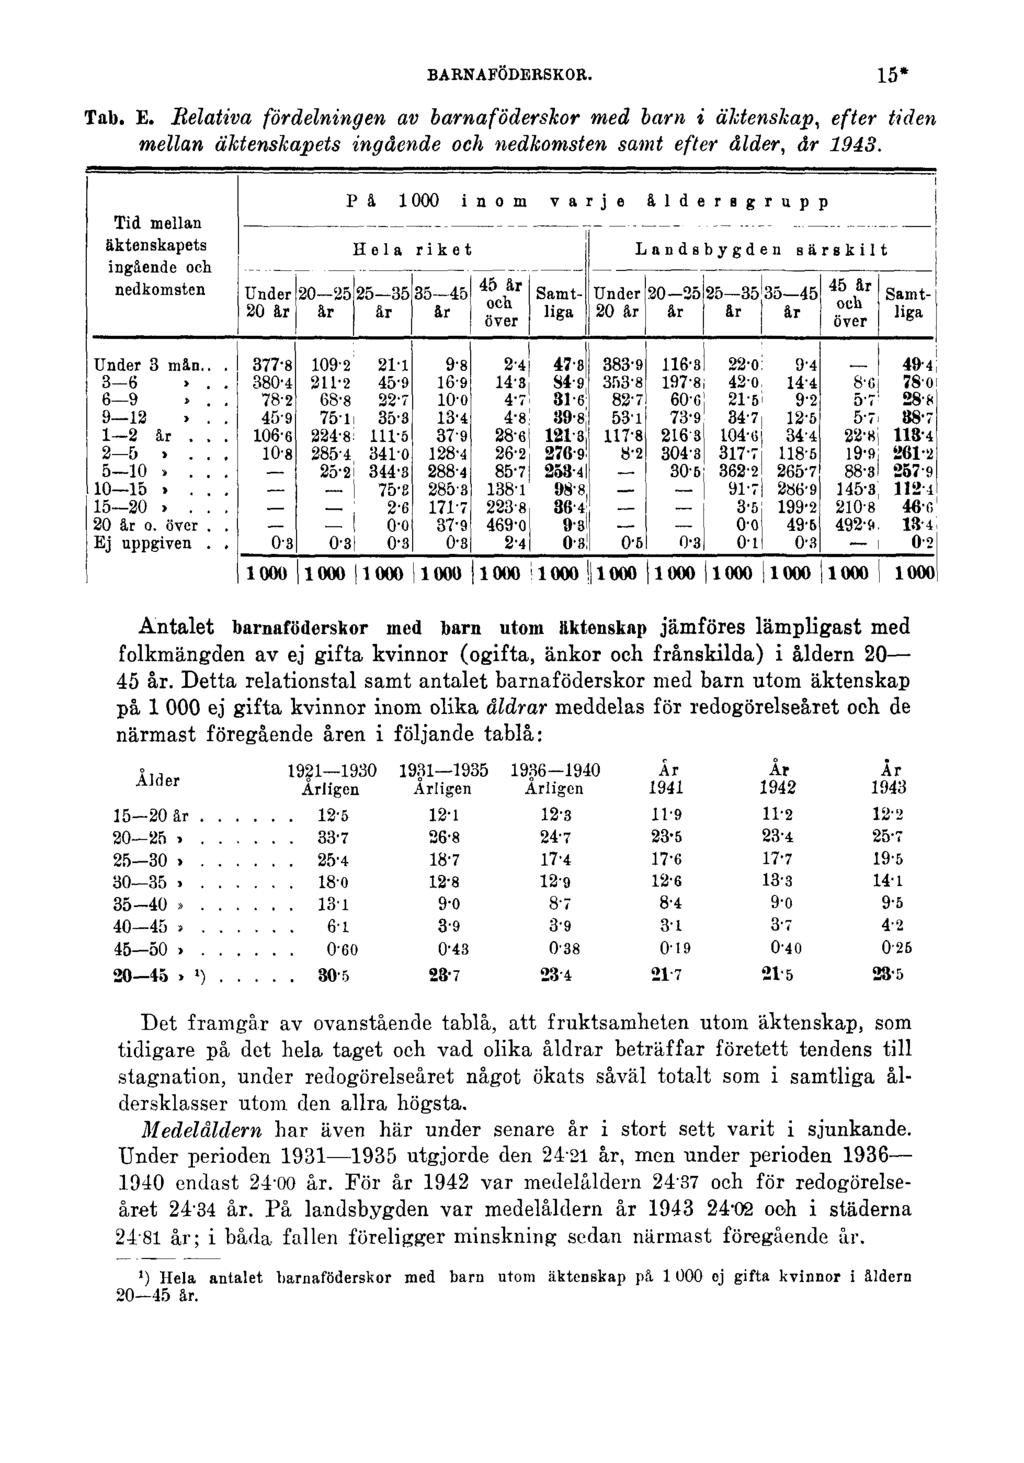 BARNAFÖDERSKOR. Tab. E. Relativa fördelningen av barnaföderskor med barn i äktenskap, efter tiden mellan äktenskapets ingående och nedkomsten samt efter ålder, år 1943.